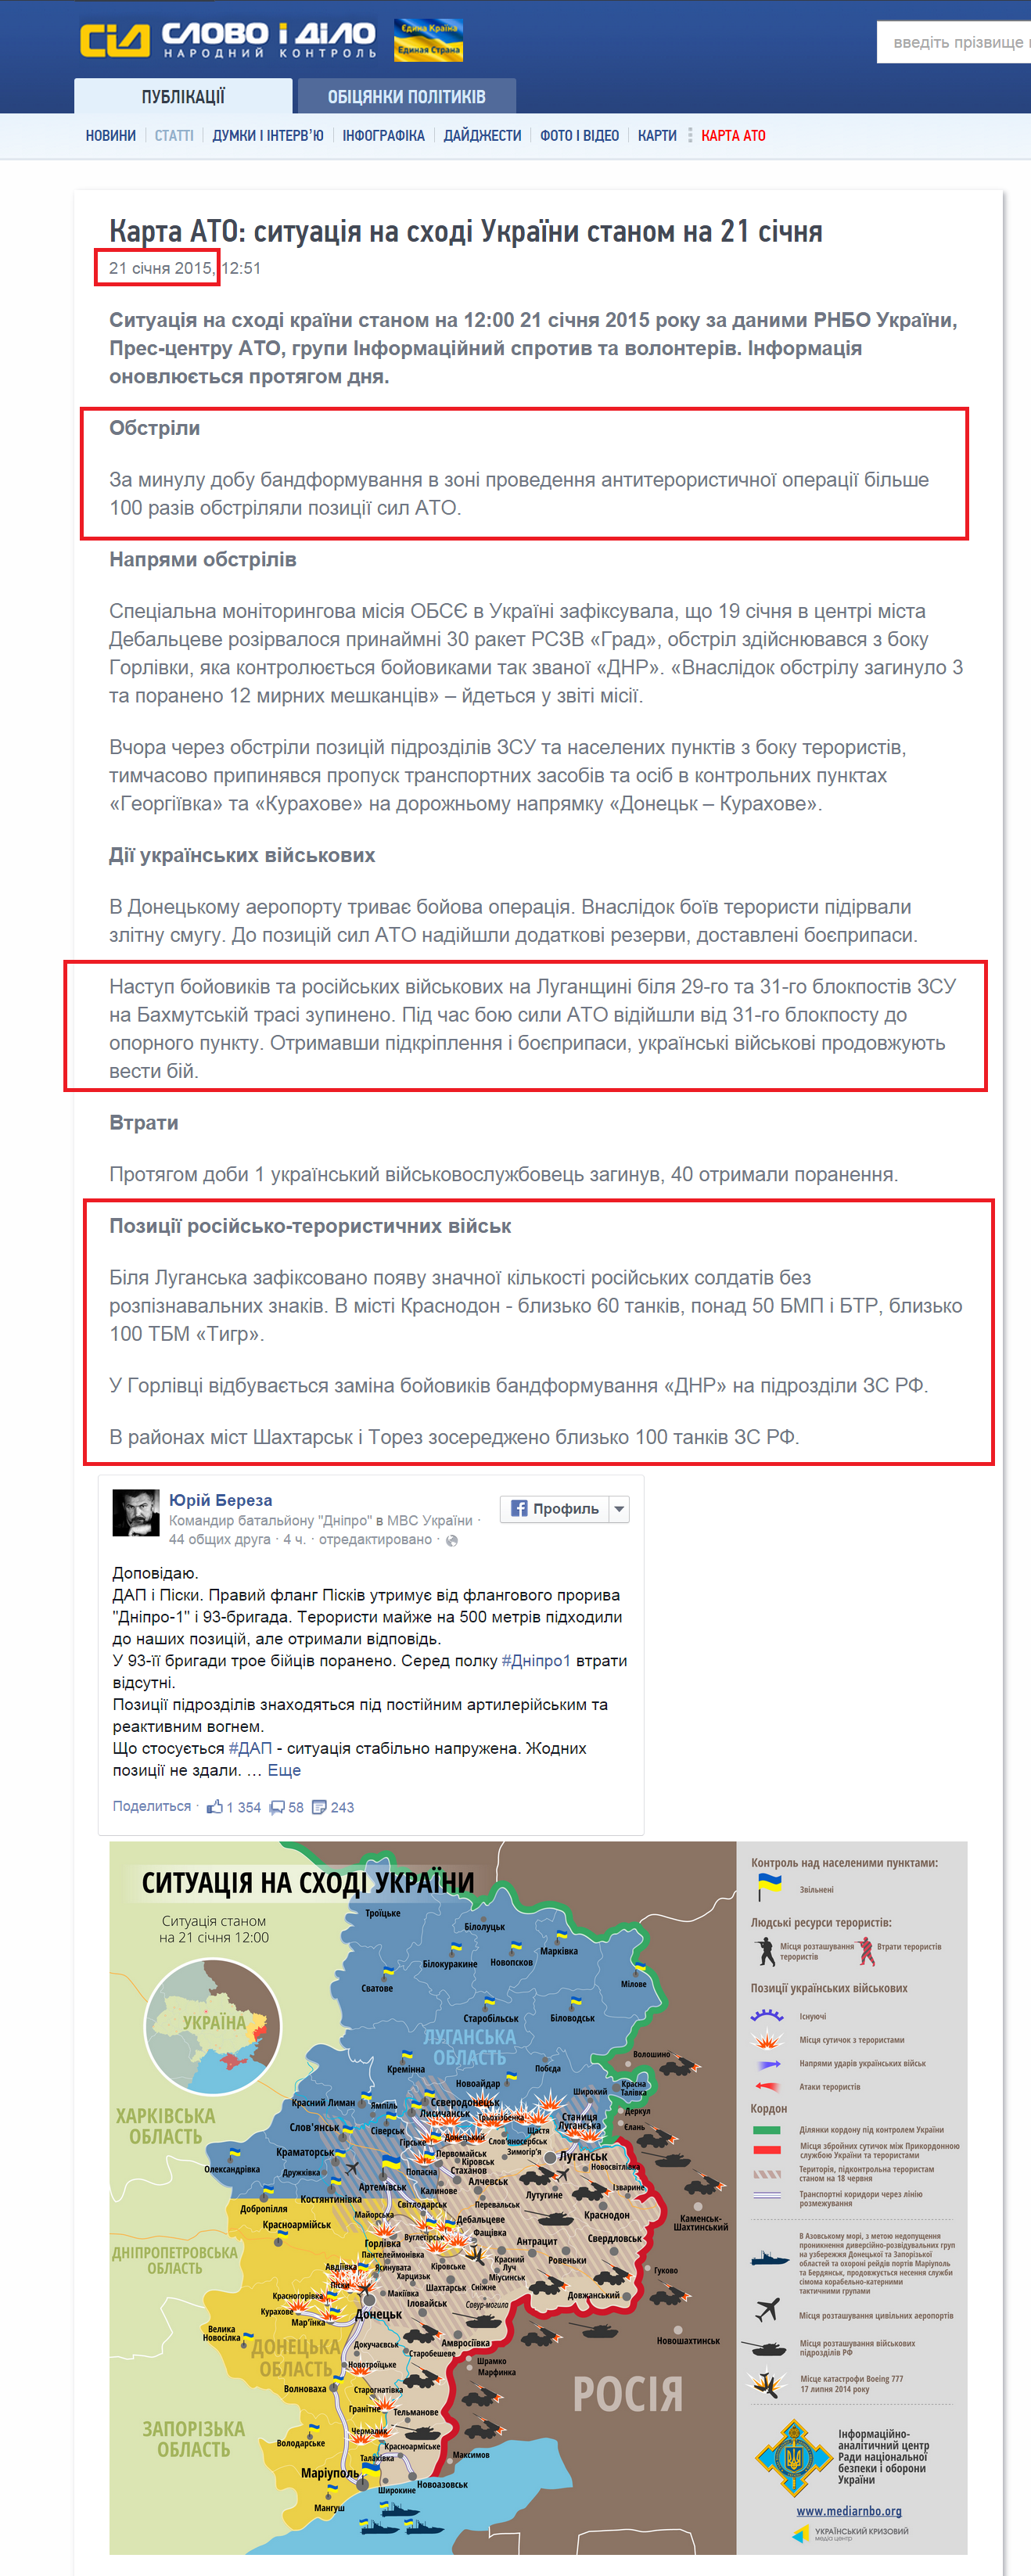 http://www.slovoidilo.ua/articles/7021/2015-01-21/karta-ato-situaciya-na-vostoke-ukrainy-po-sostoyaniyu-na-21-yanvarya.html